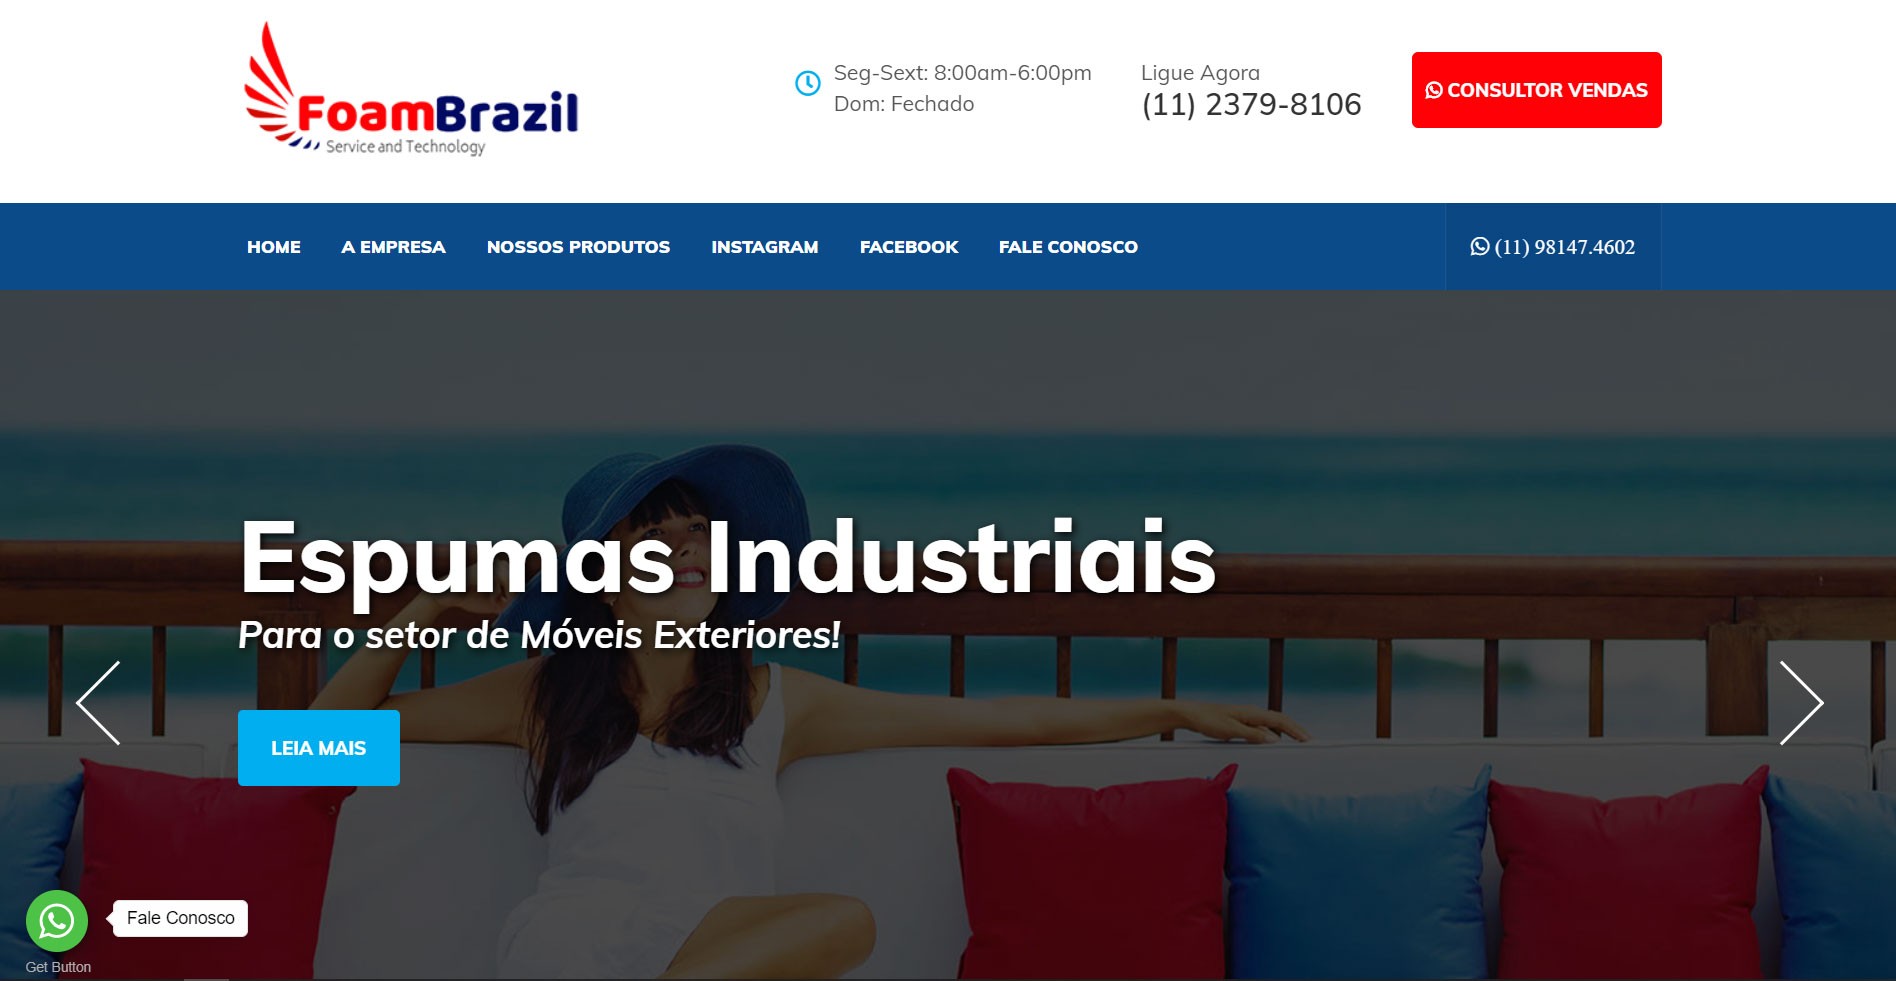  Foam Brazil se tornando lider de buscas SEO em seu mercado!